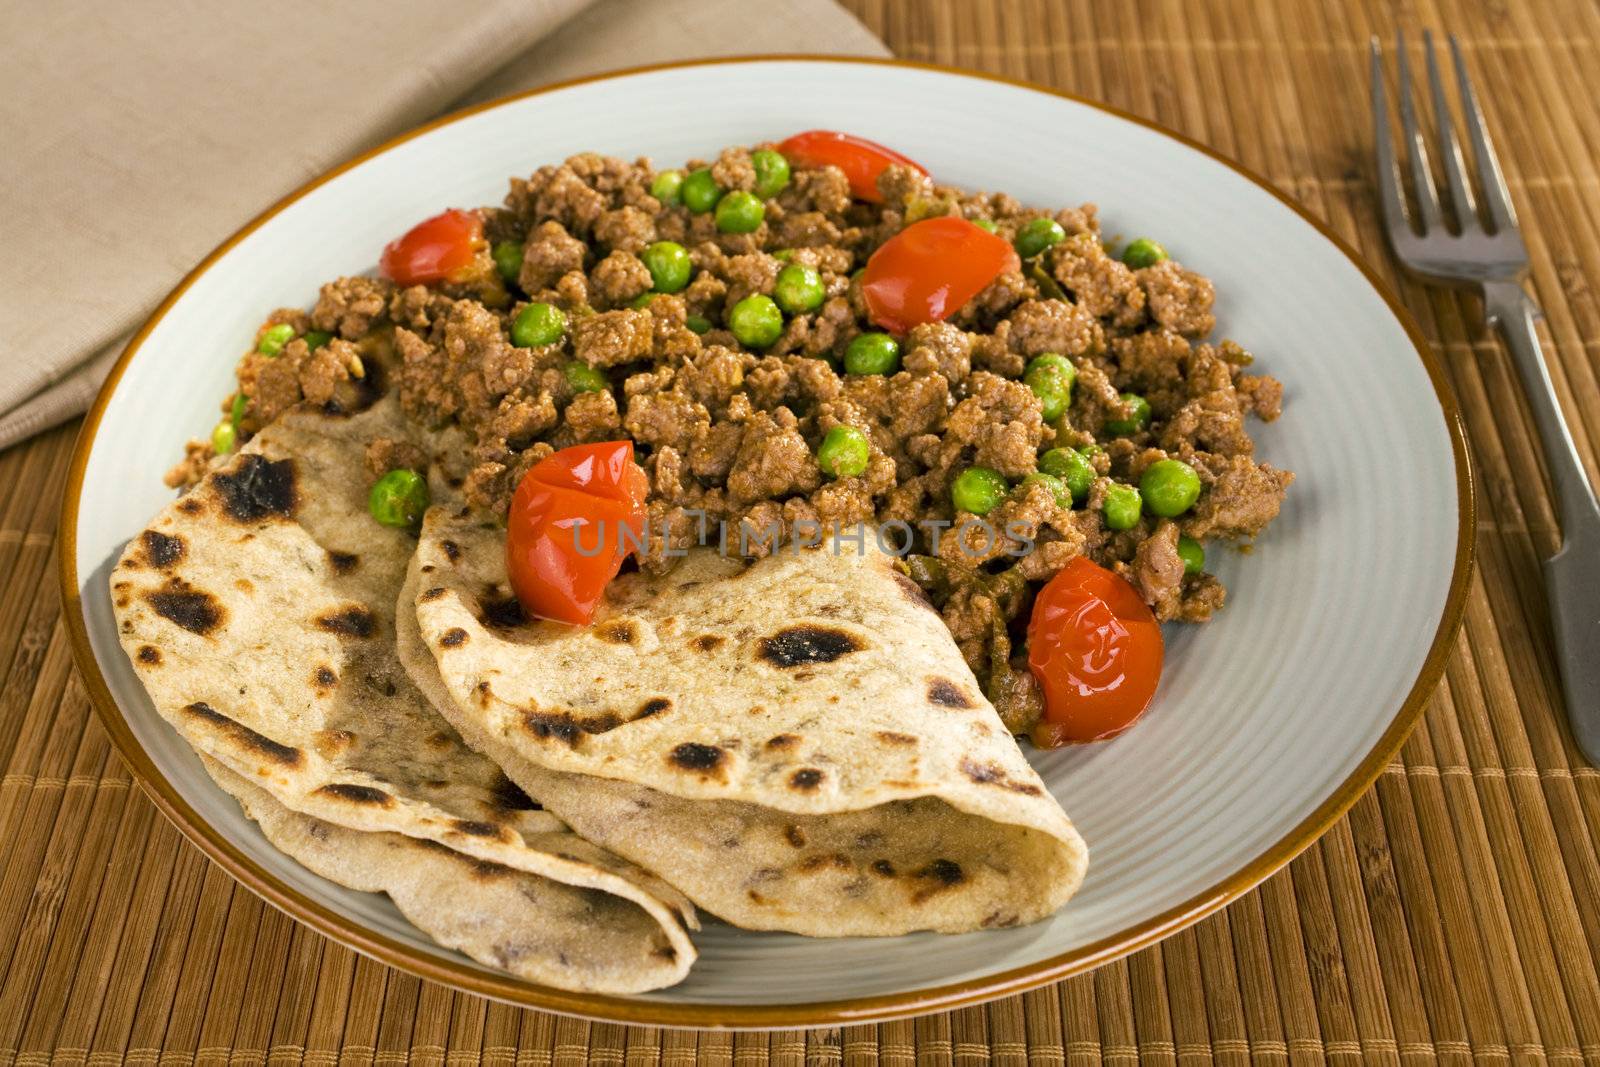 Plated meal of lamb keema matar with chapatis.